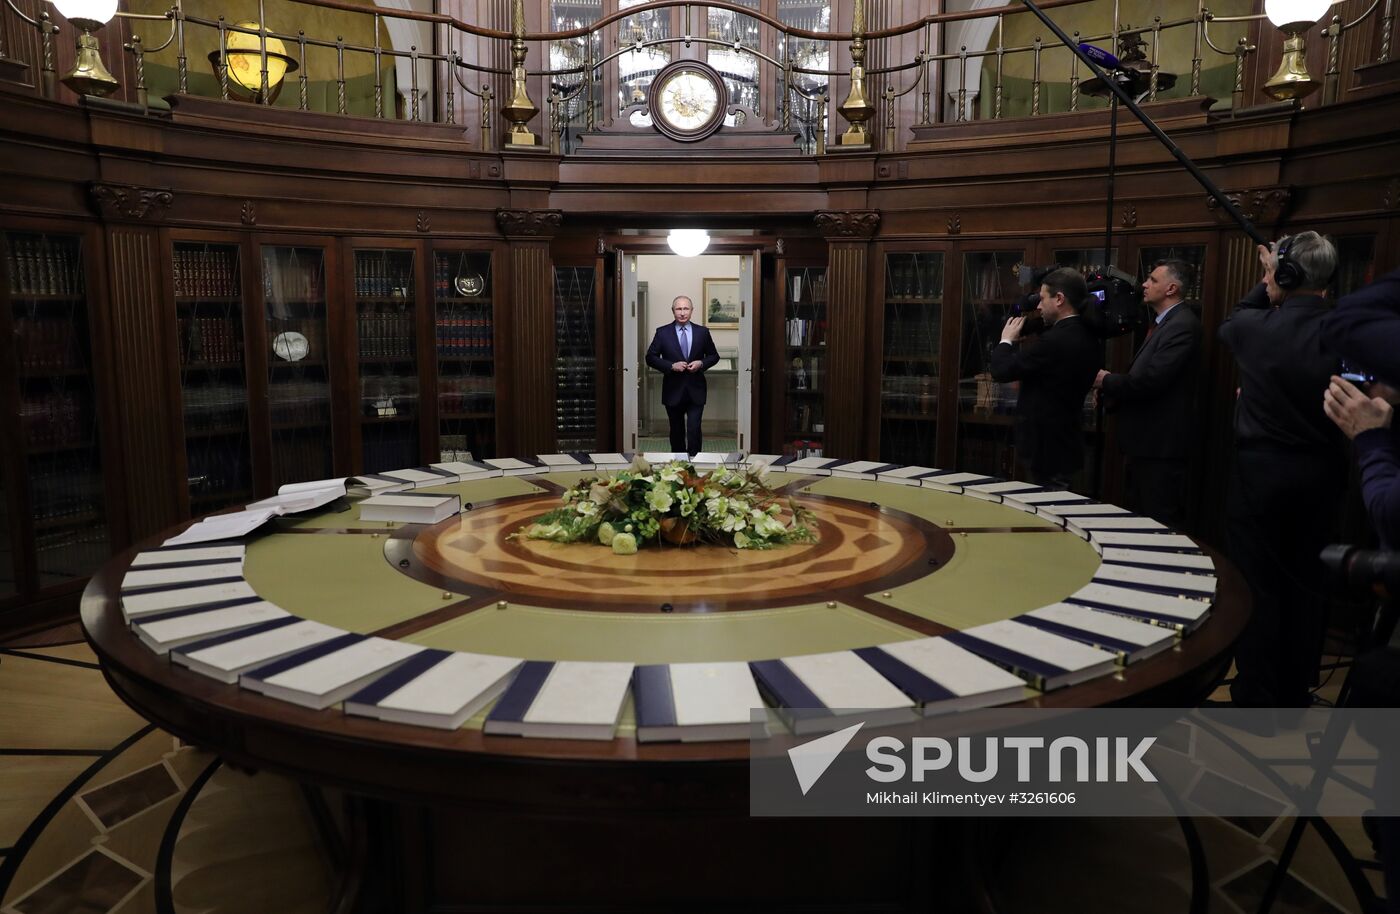 President Vladimir Putin attends presentation of Great Russian Encyclopedia